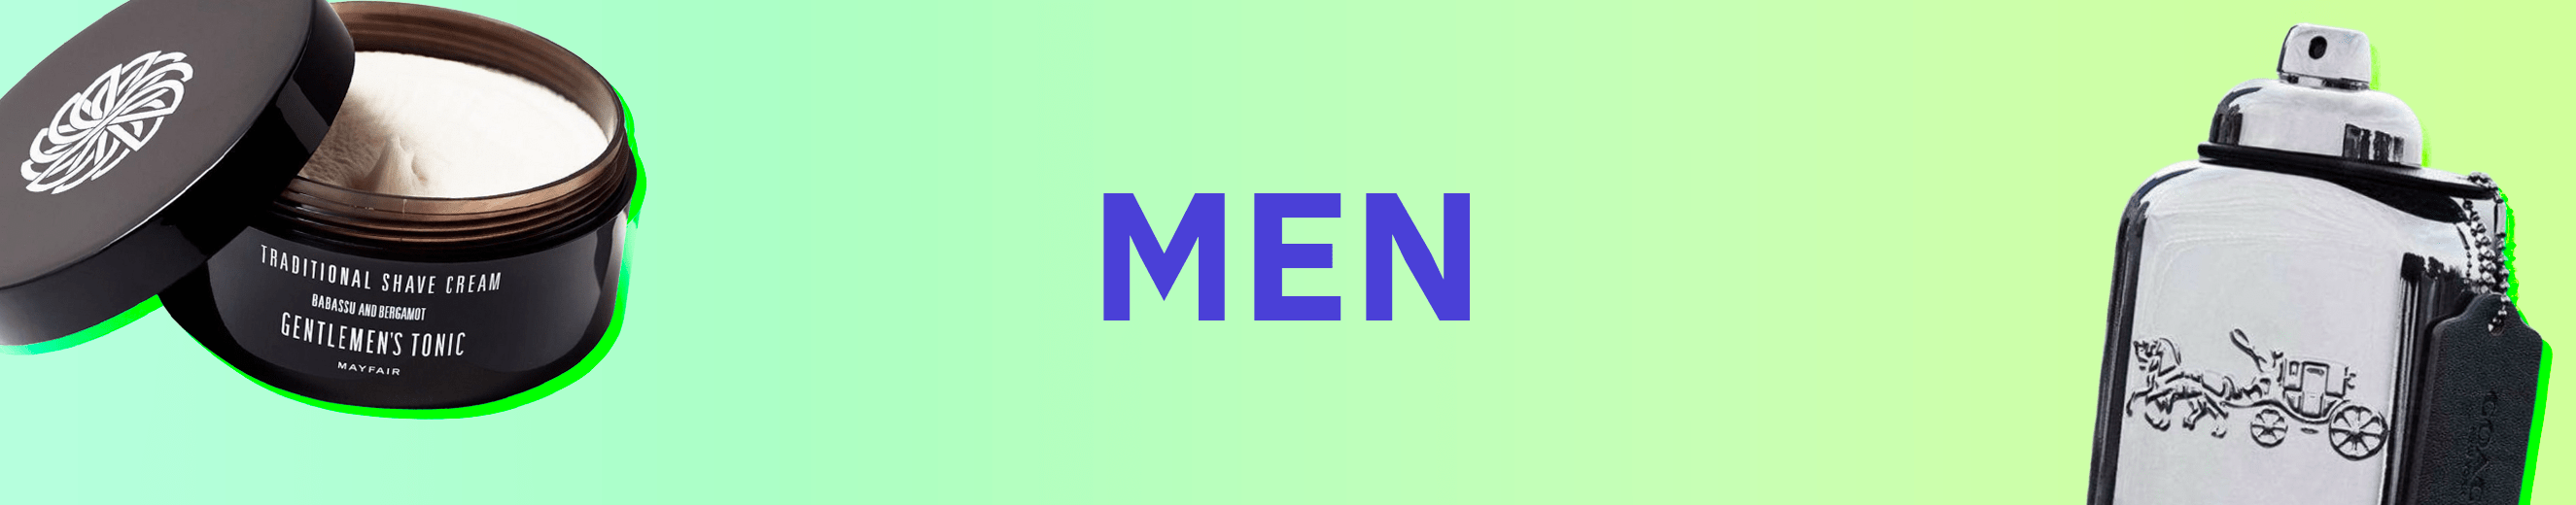 men?handle=men-collection